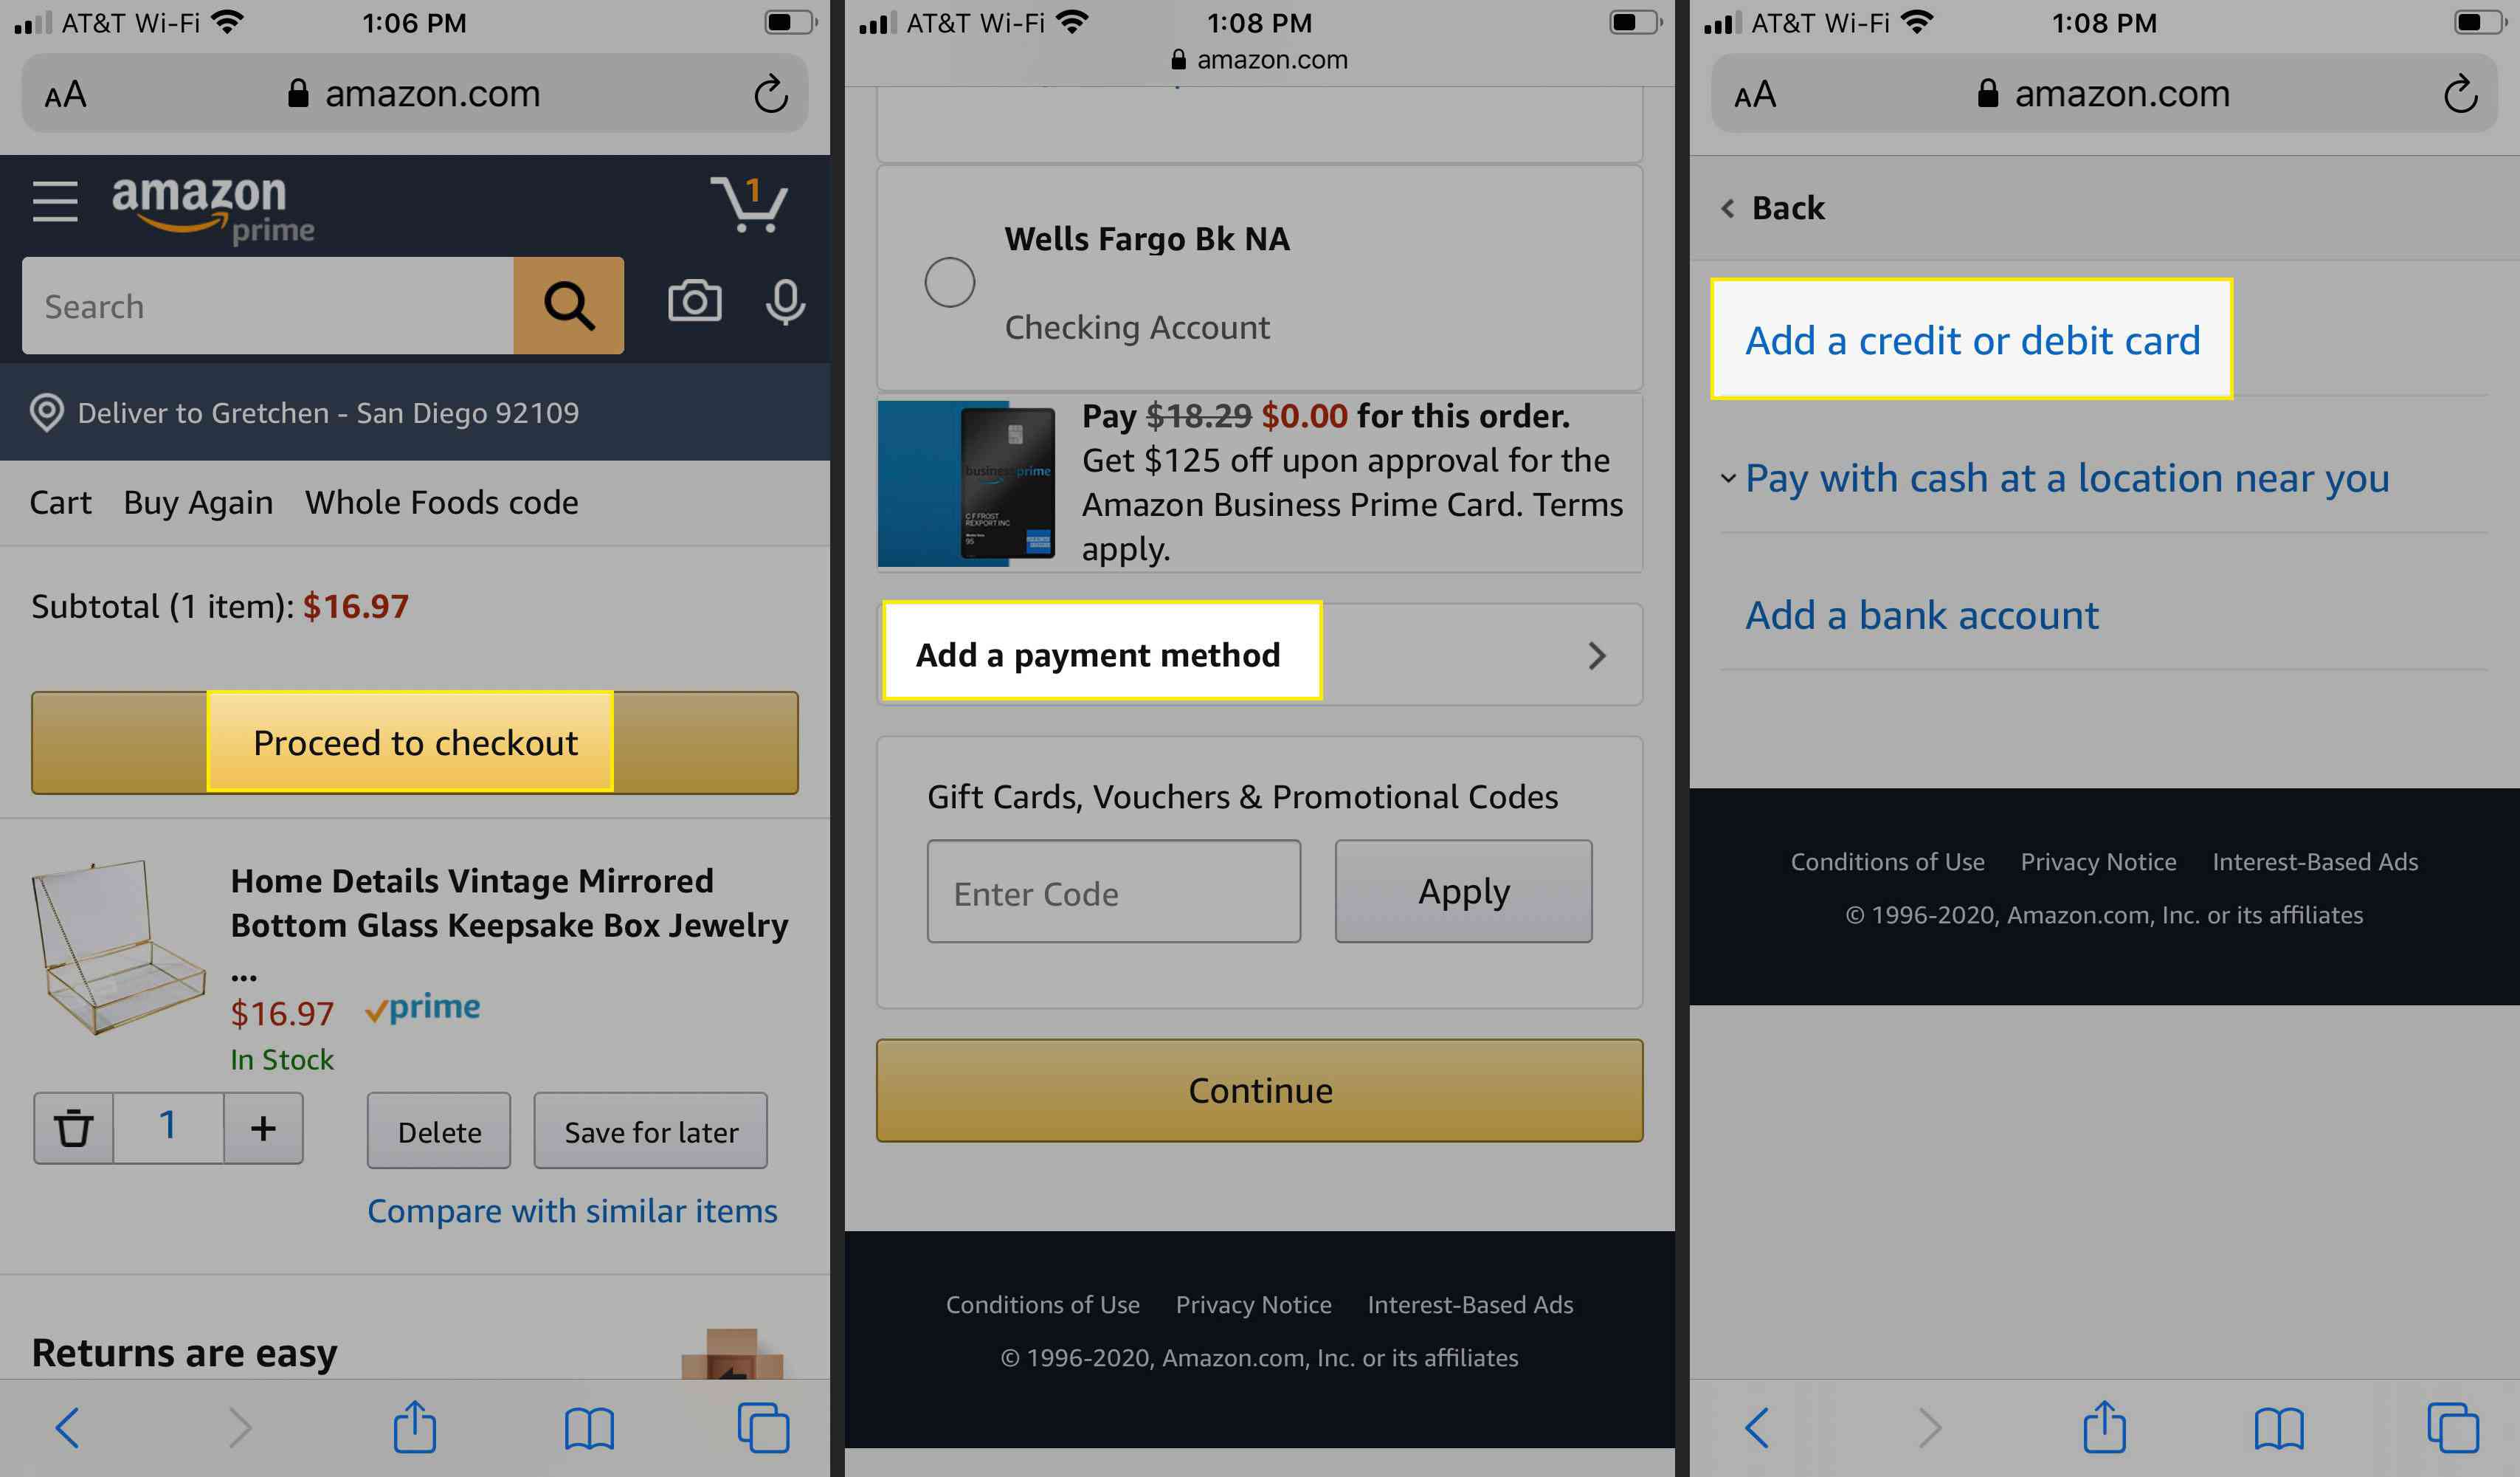 Prossiga para a finalização da compra, "Adicionar uma forma de pagamento" e "Adicionar um cartão de crédito ou débito" no aplicativo Amazon